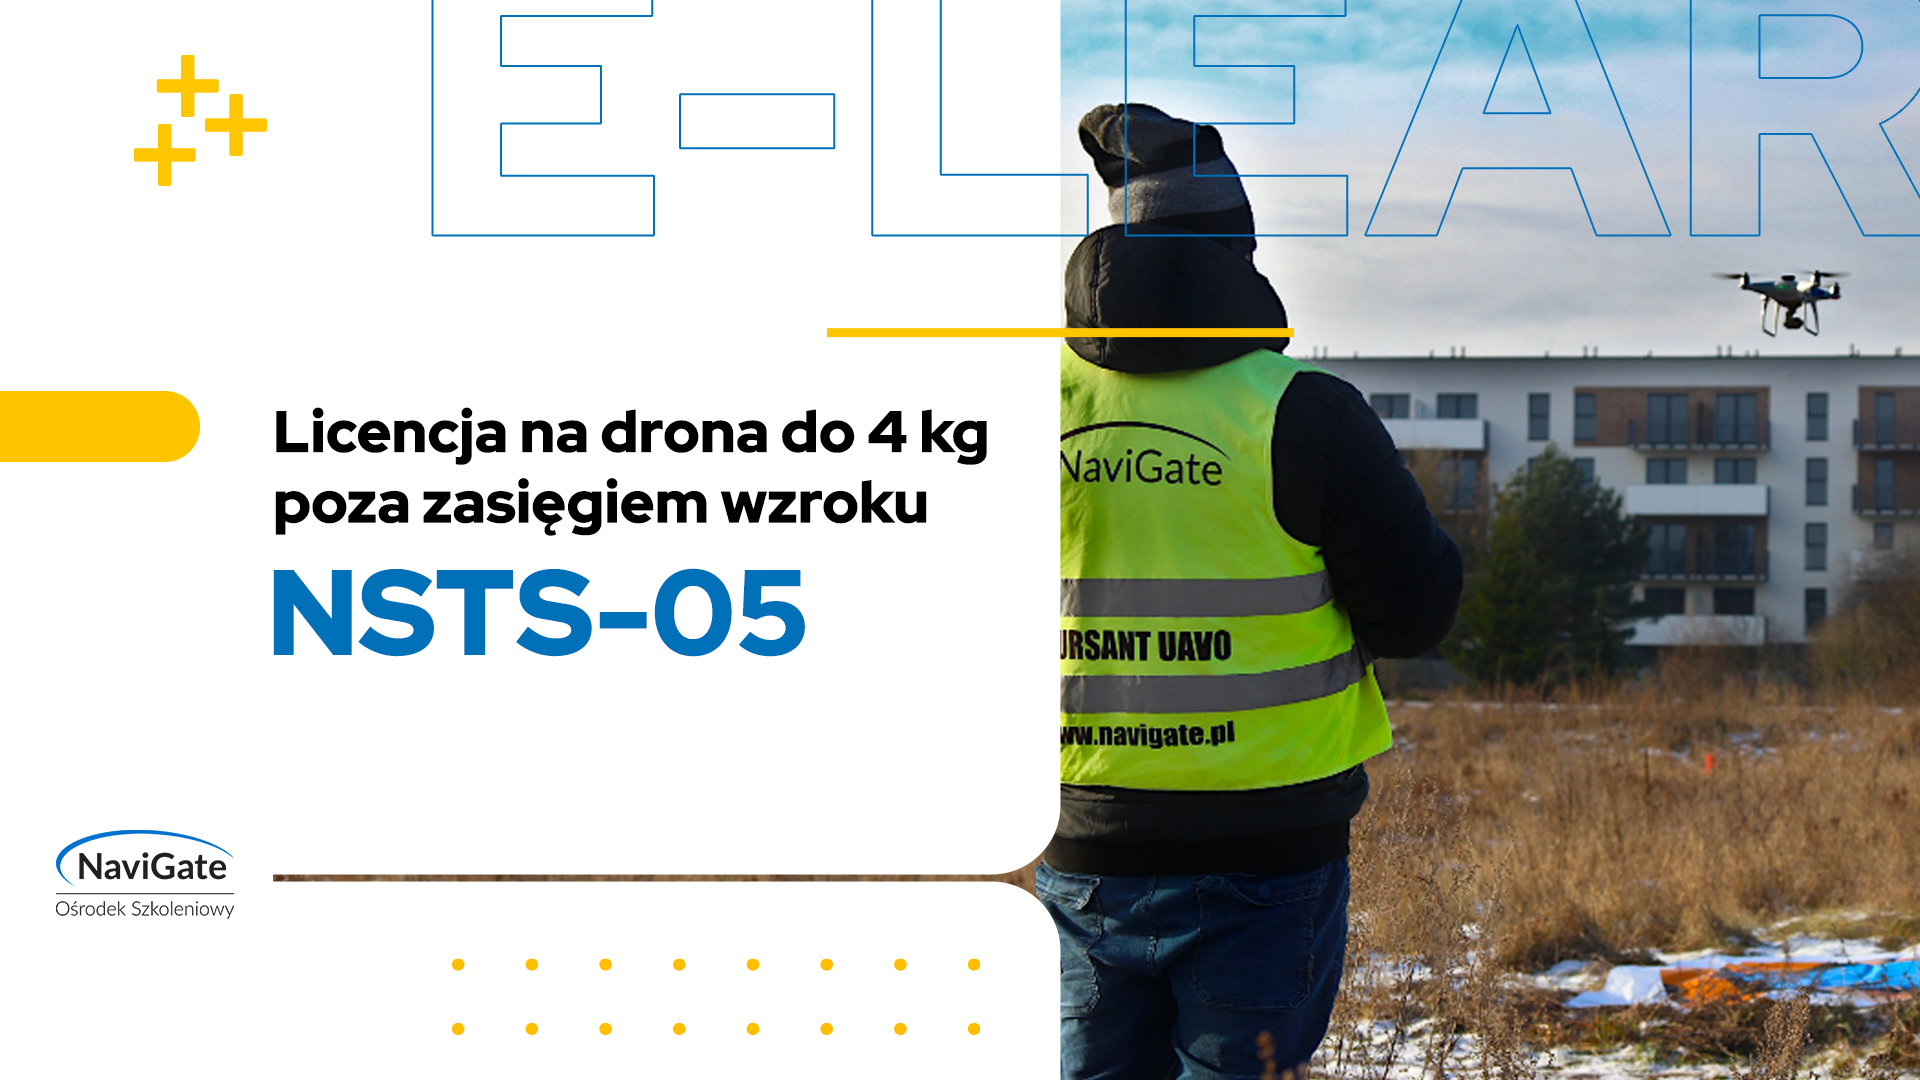 NSTS-05 – licencja na drona do 4 kg poza zasięgiem wzroku (BVLOS)